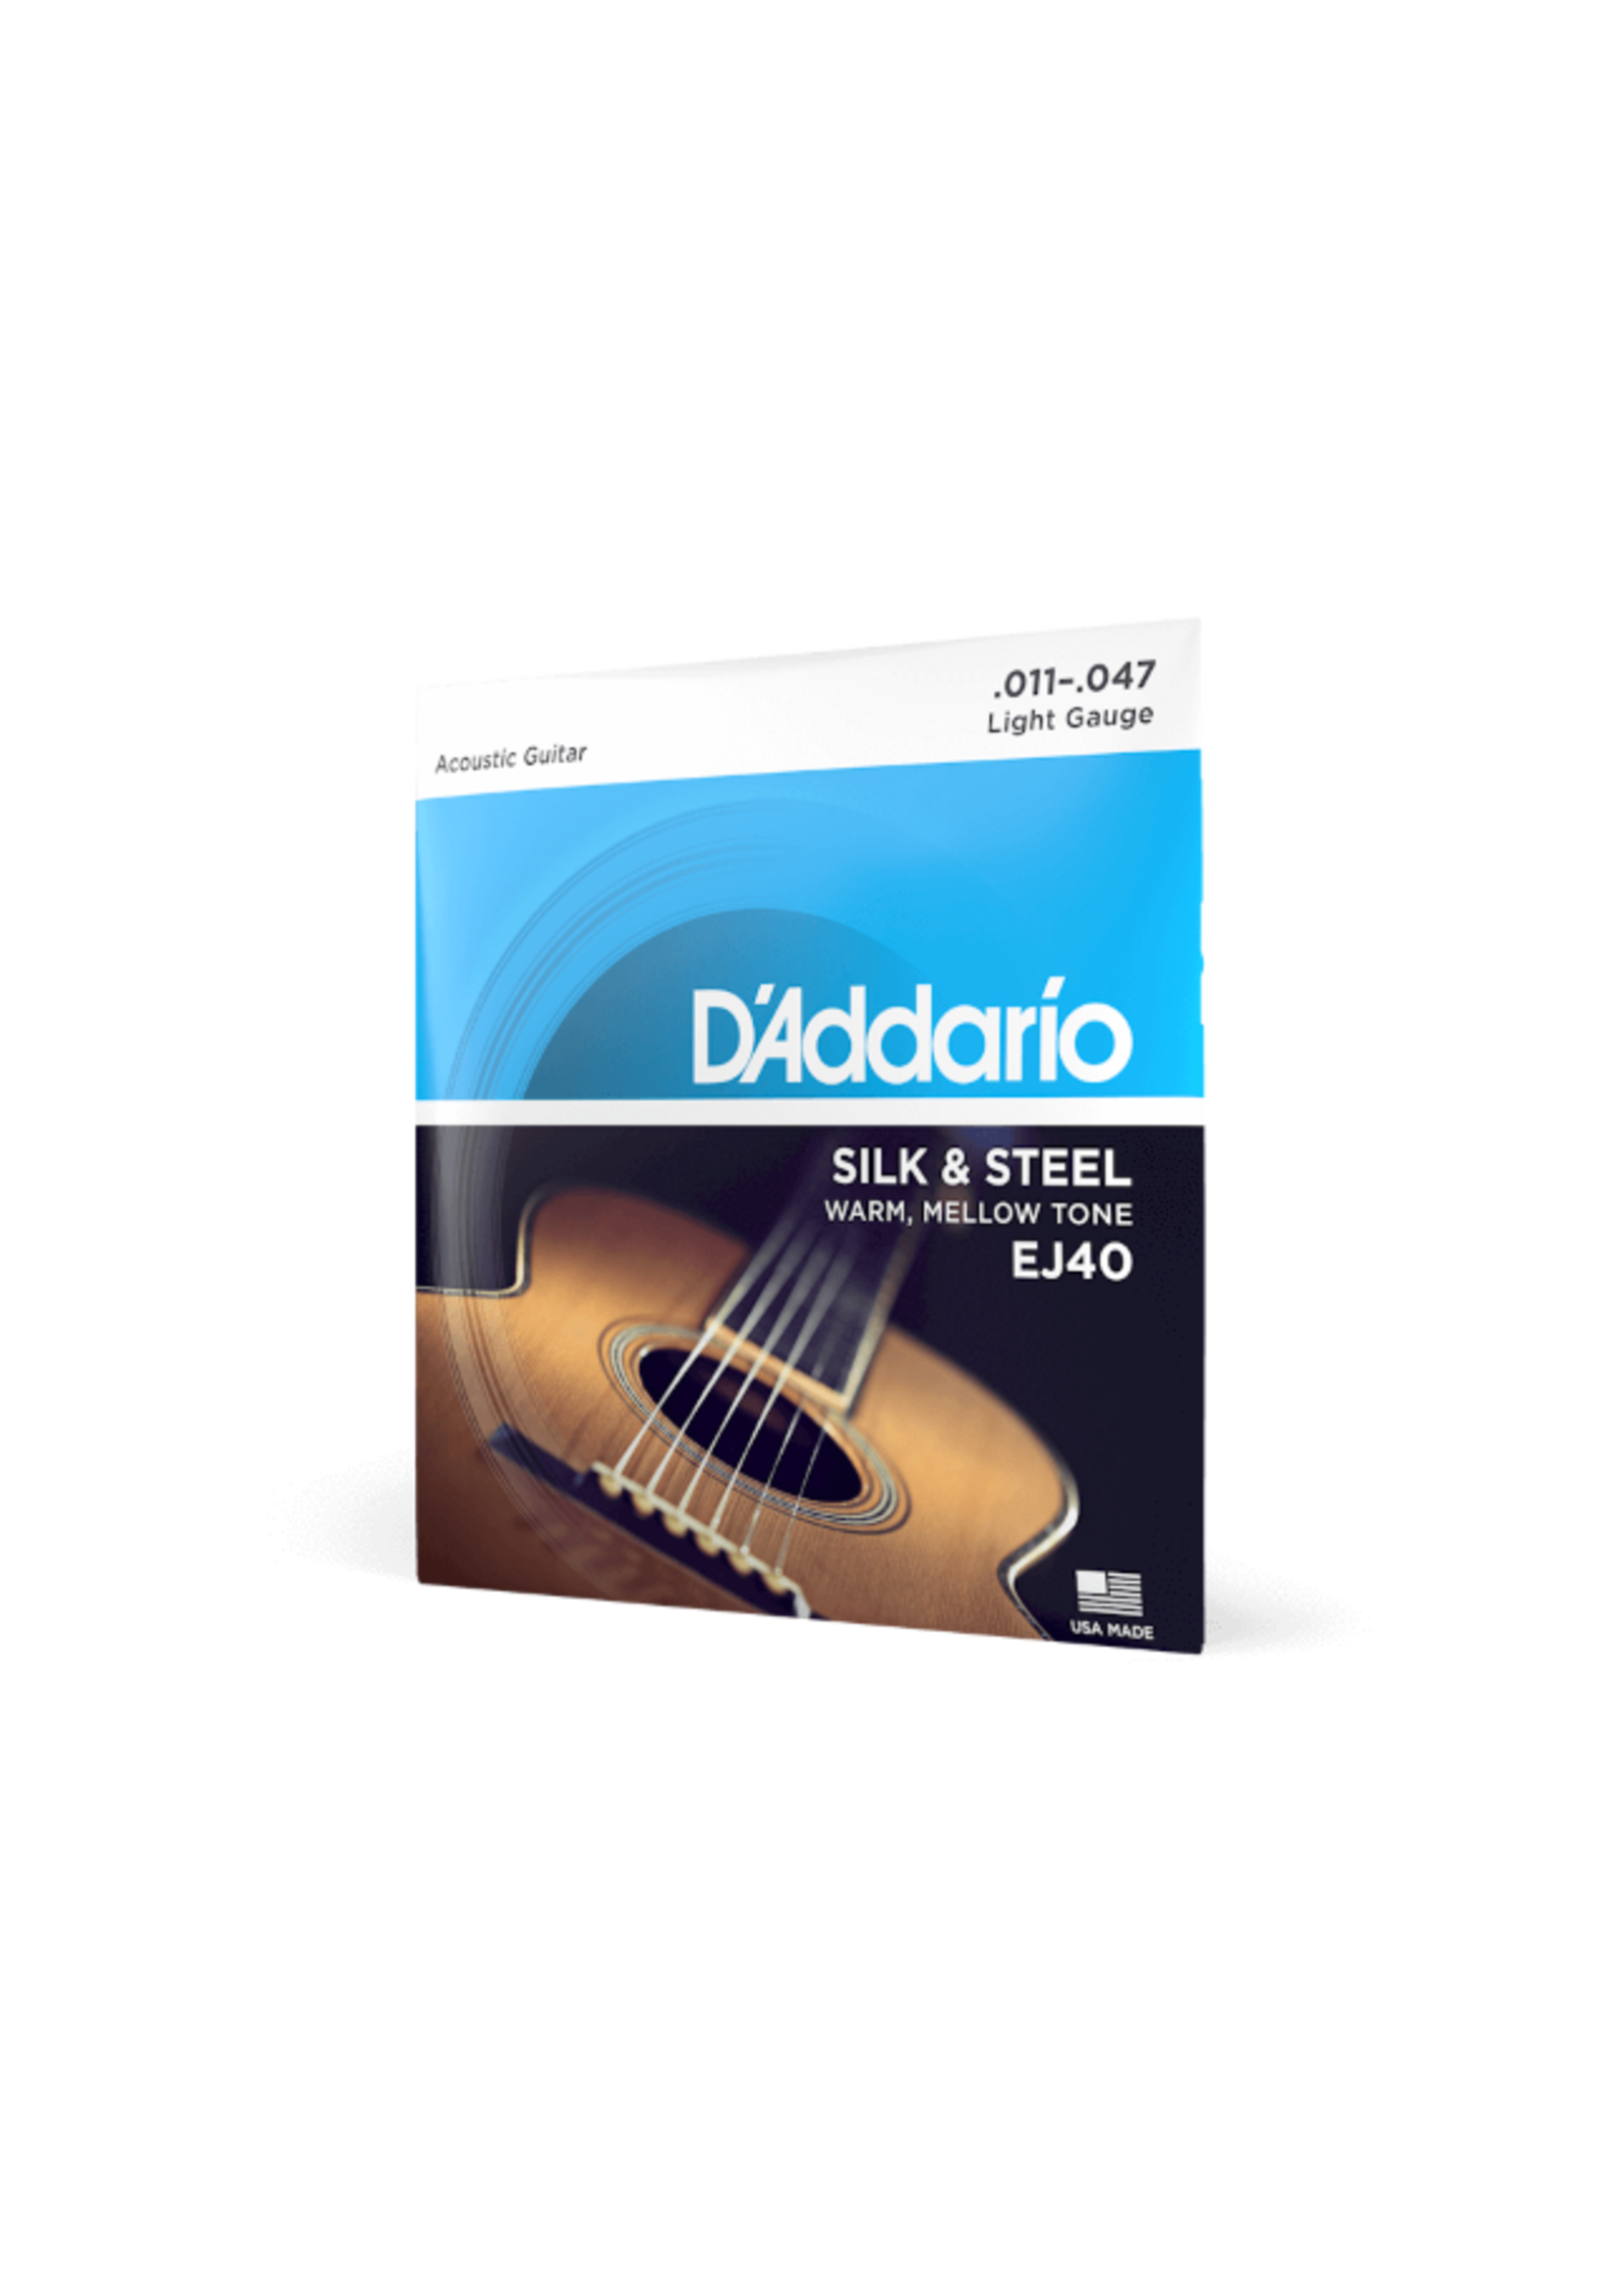 D'Addario D'Addario Acoustic Strings Silk & Steel